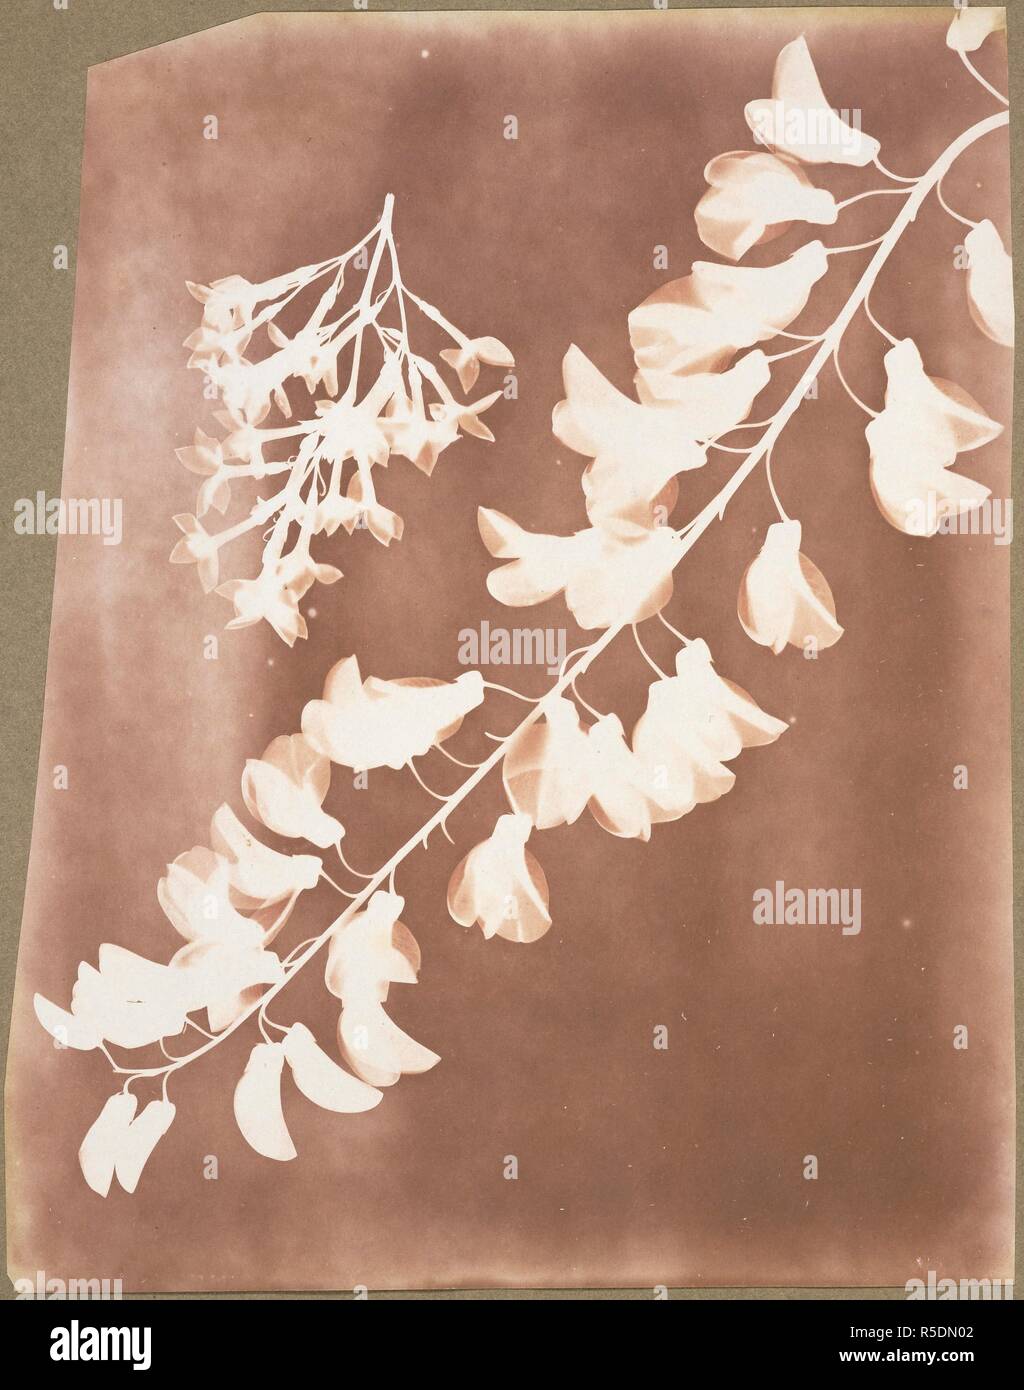 Les spécimens botaniques. 1839. Dessin photogénique de spécimens botaniques. Source : Photo Talbot 14(2). Auteur : William Henry Fox Talbot,. Banque D'Images